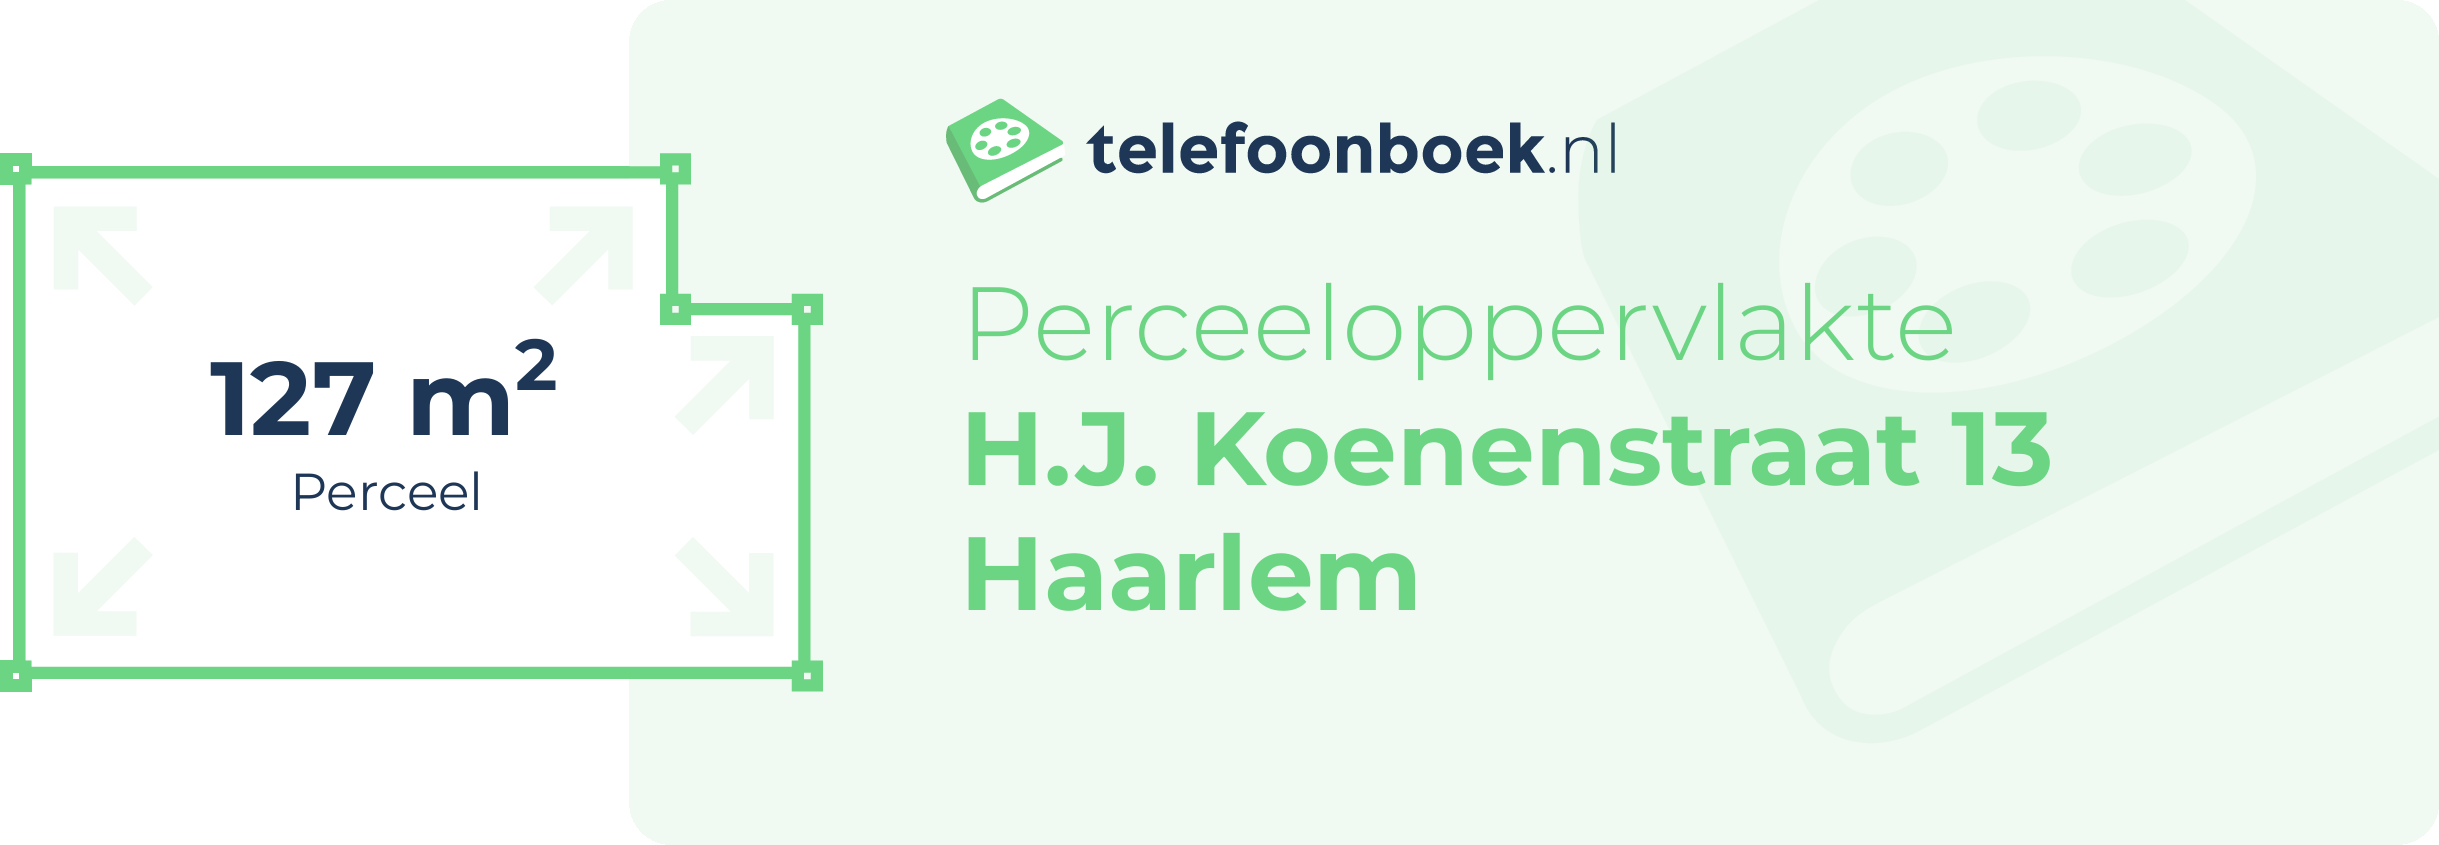 Perceeloppervlakte H.J. Koenenstraat 13 Haarlem